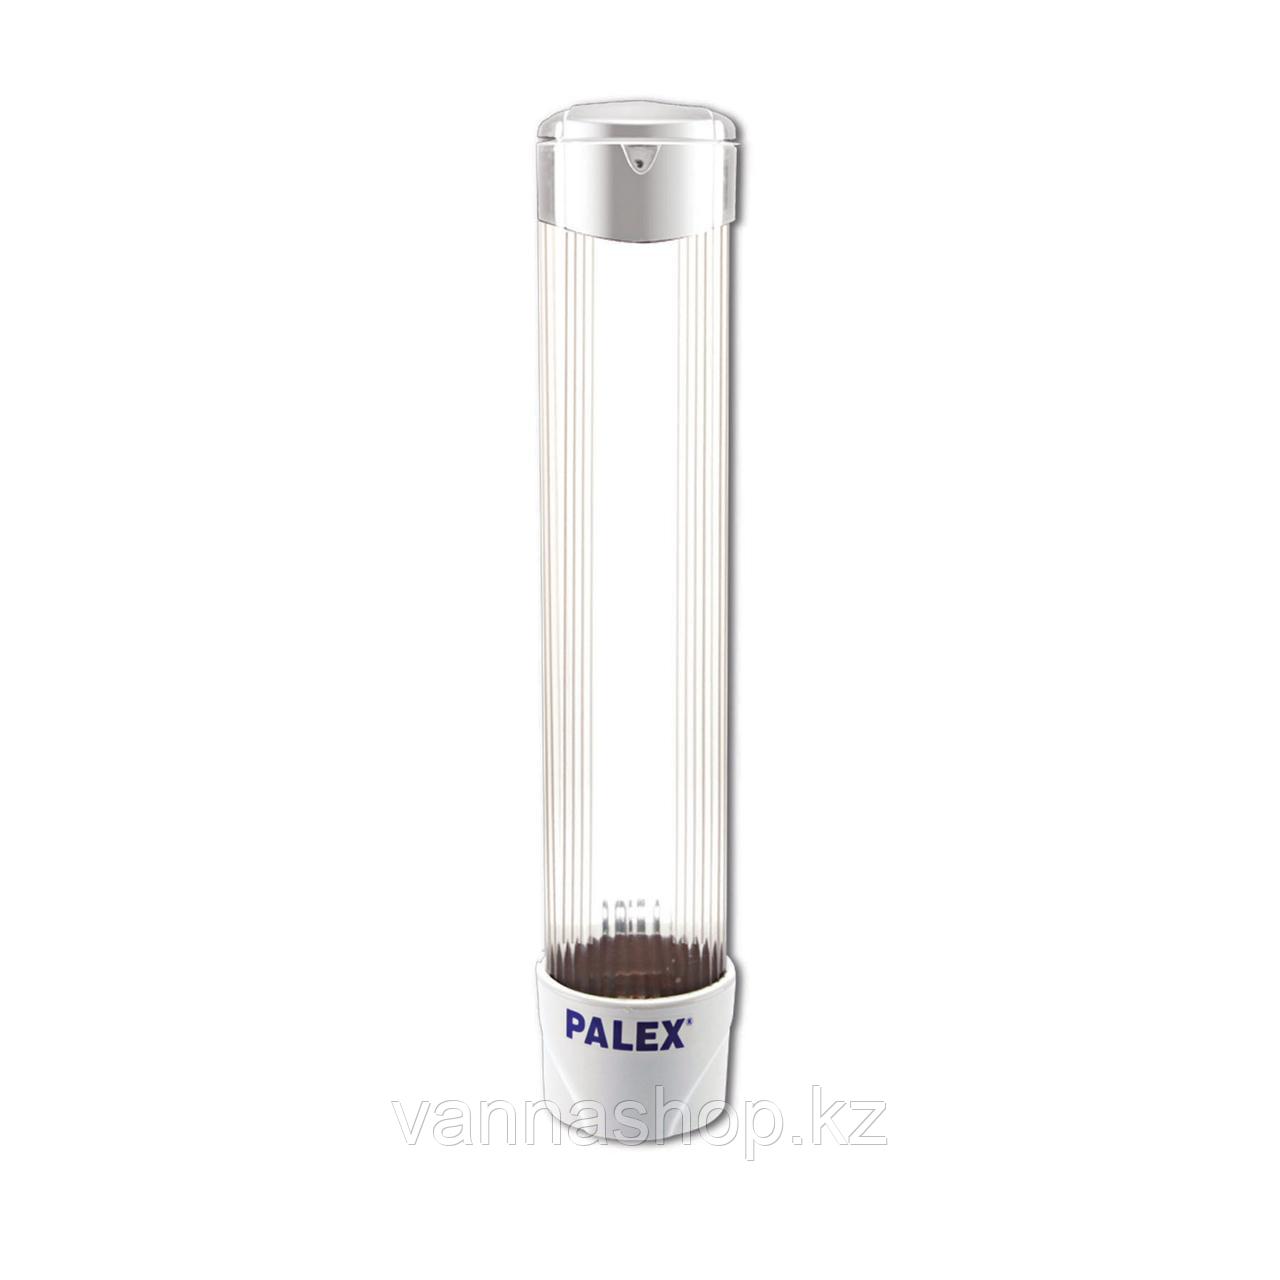 Диспенсер Palex для пластиковых стаканов